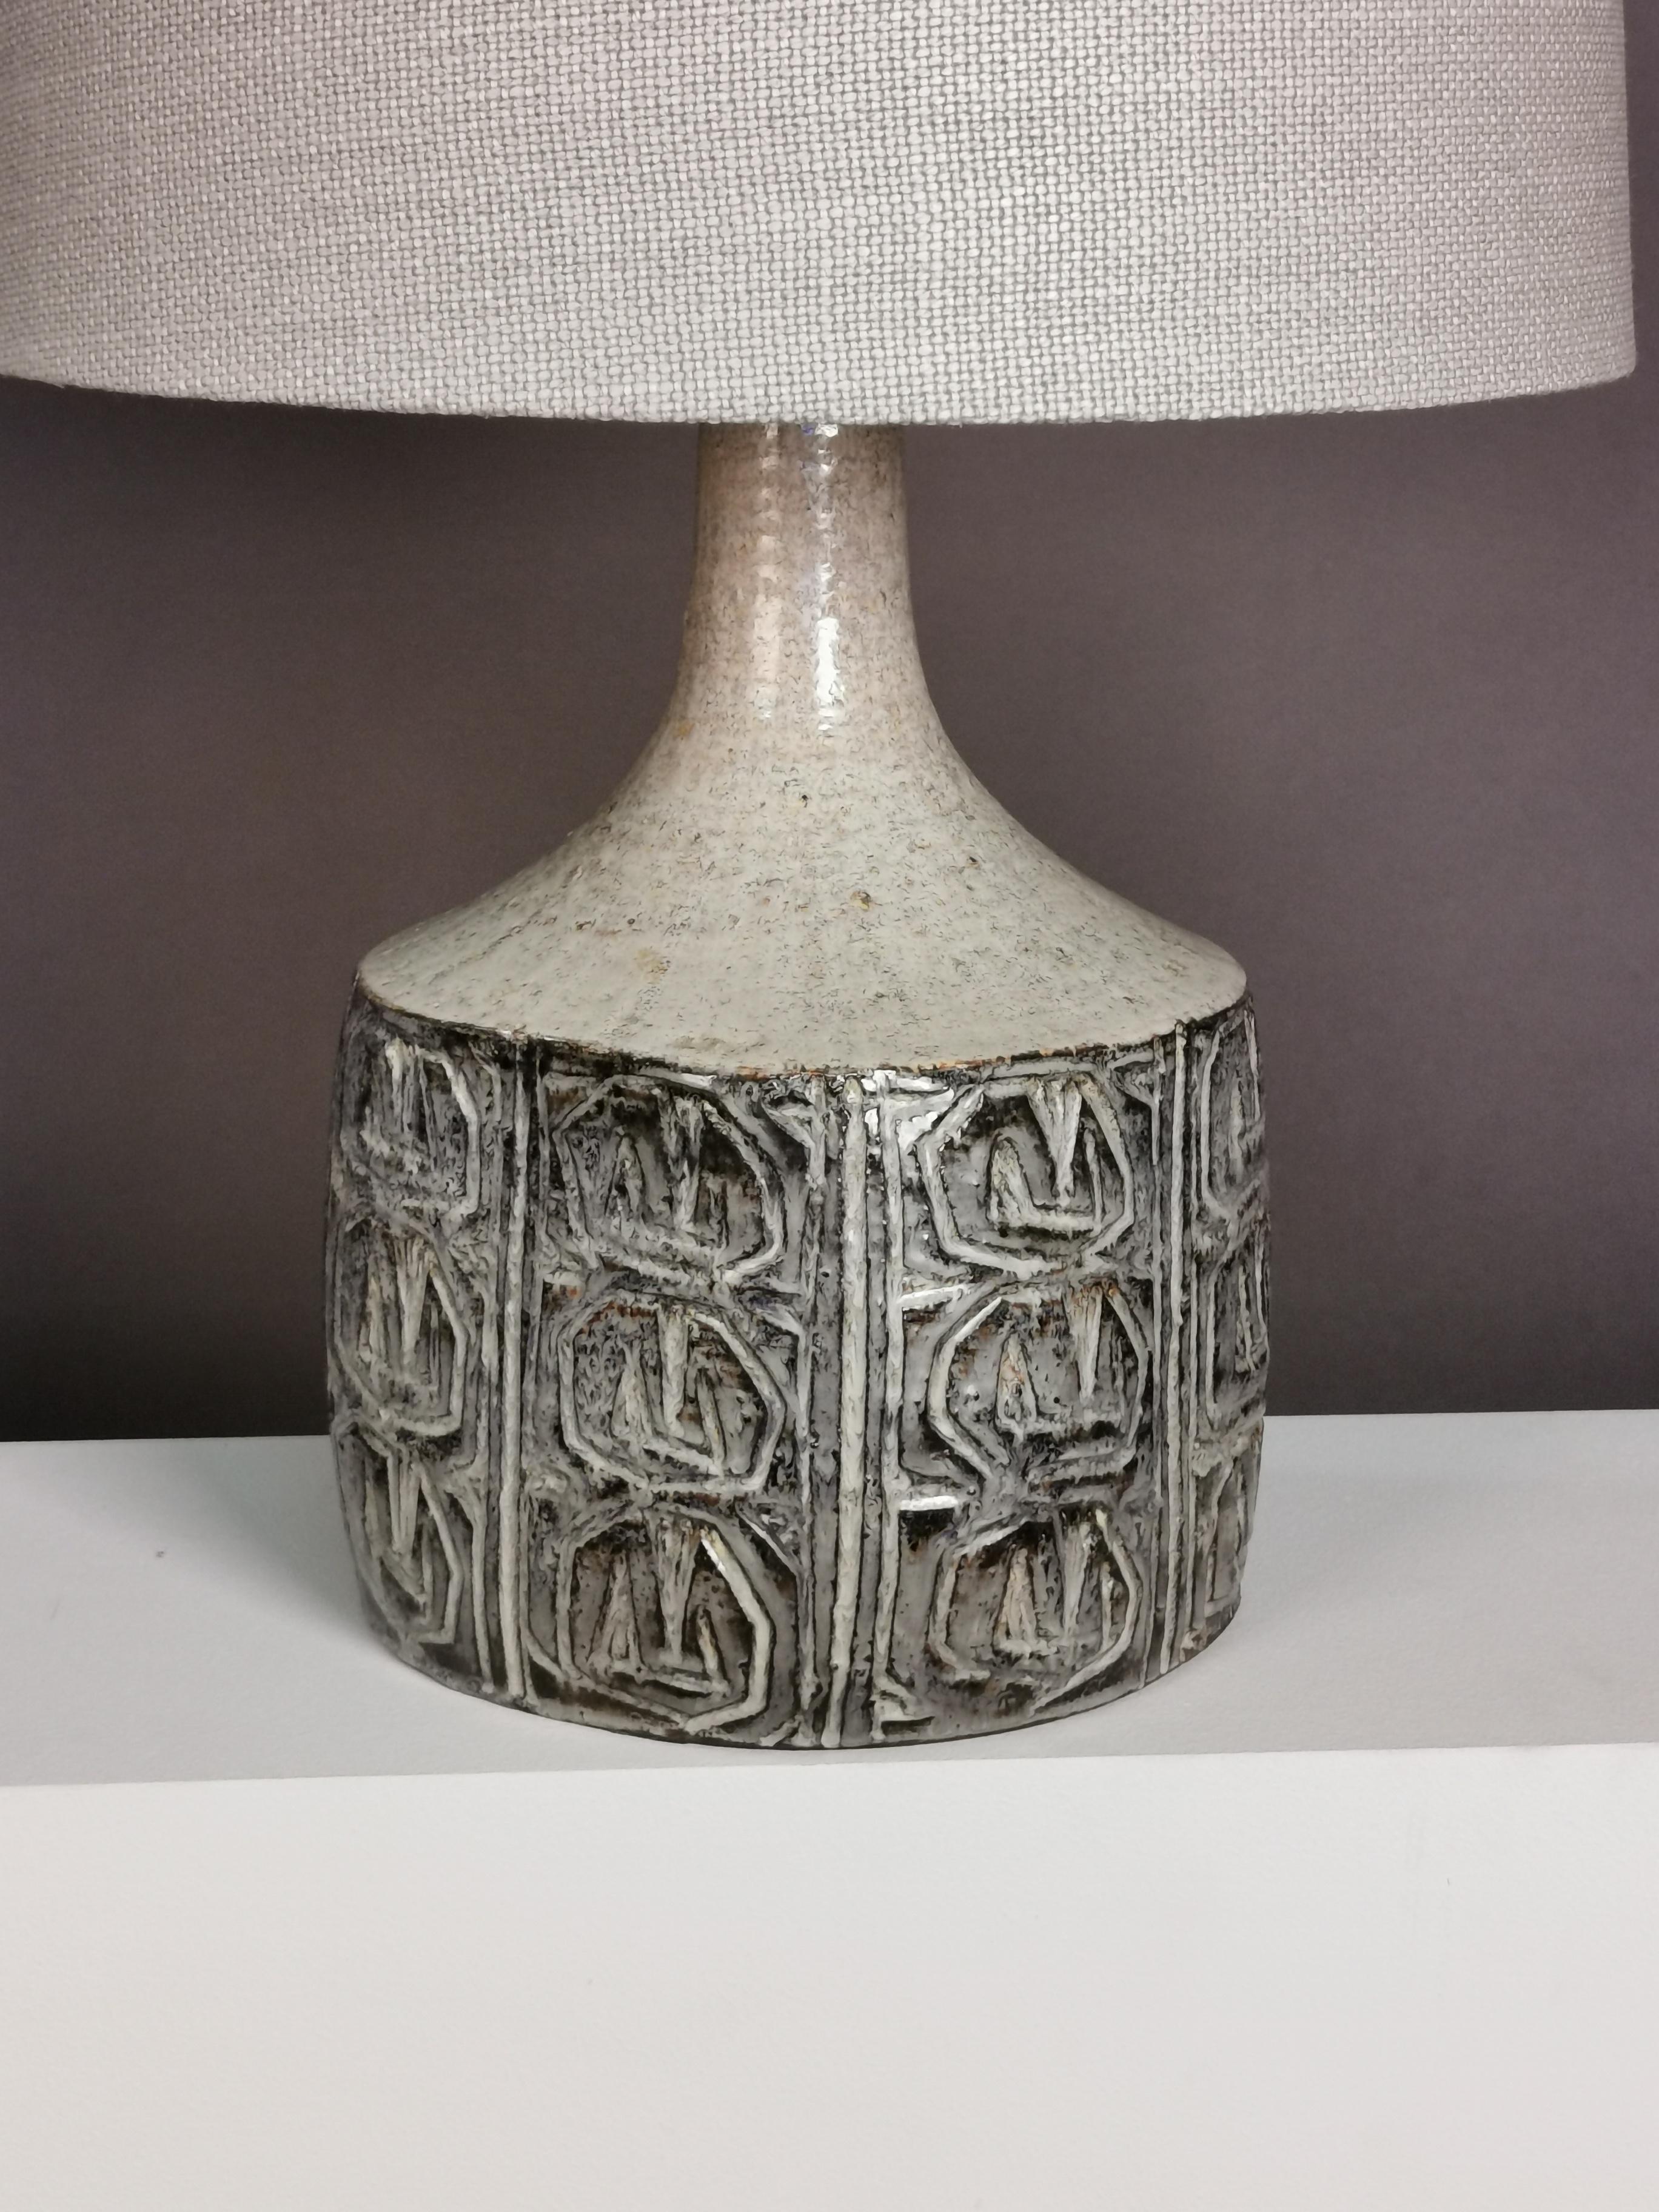 Danish Ceramic Table Lamp by Jette Hellerøe, Denmark, 1964